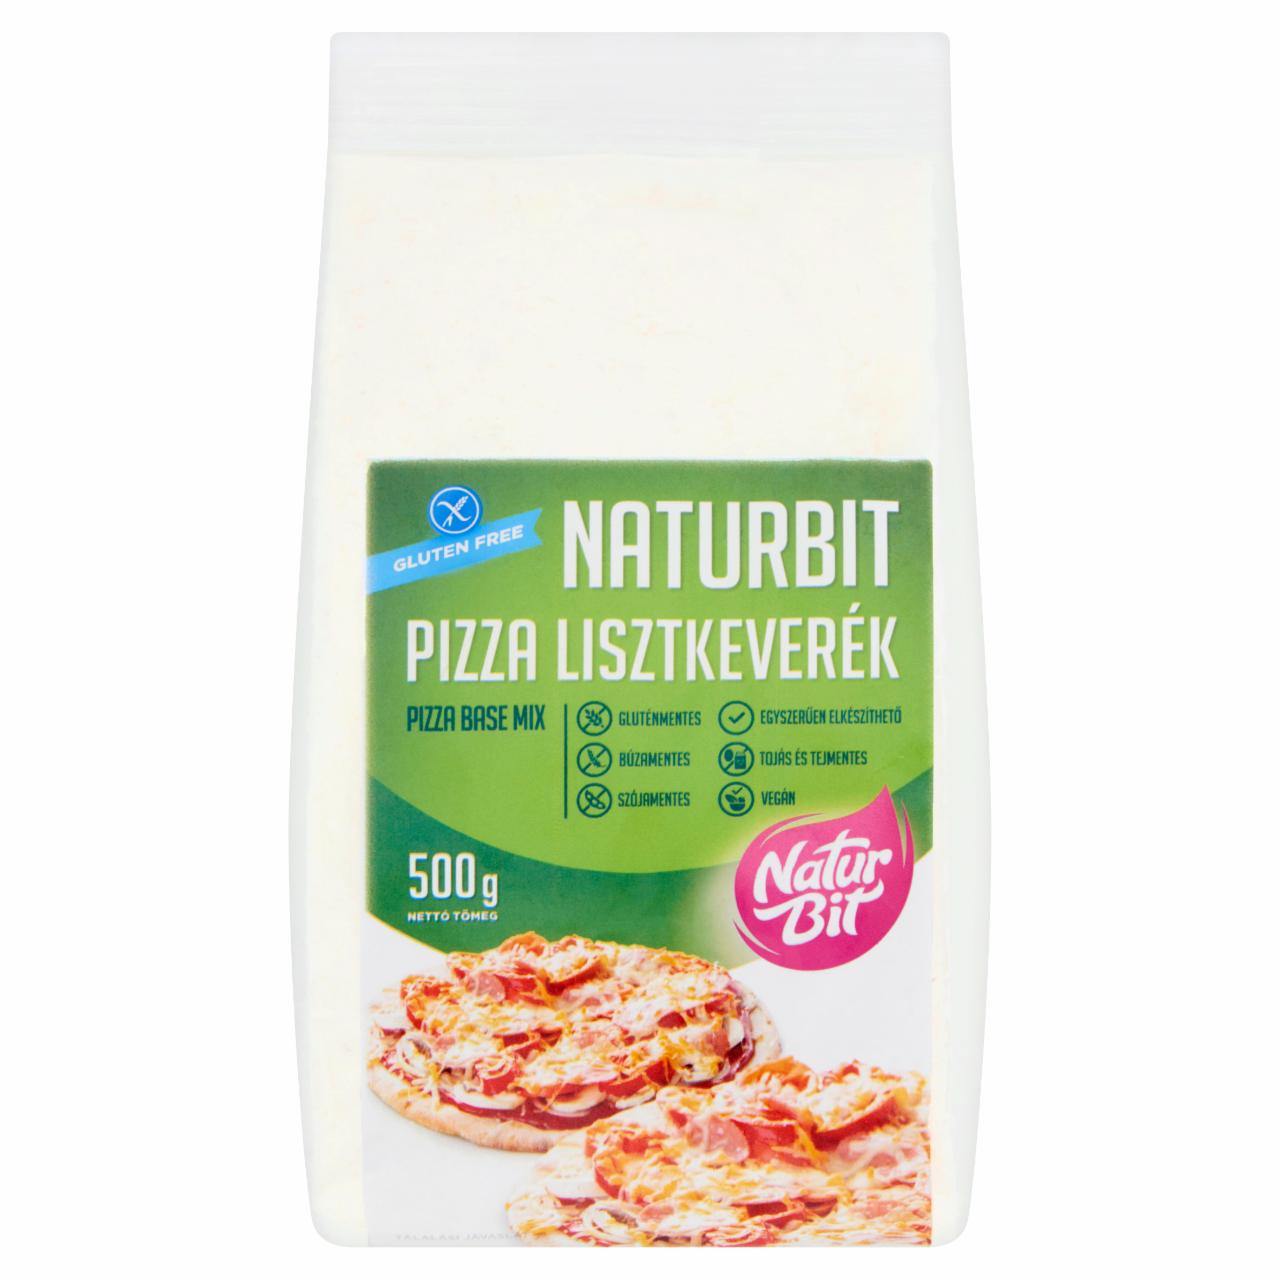 Képek - Naturbit pizza lisztkeverék 500 g